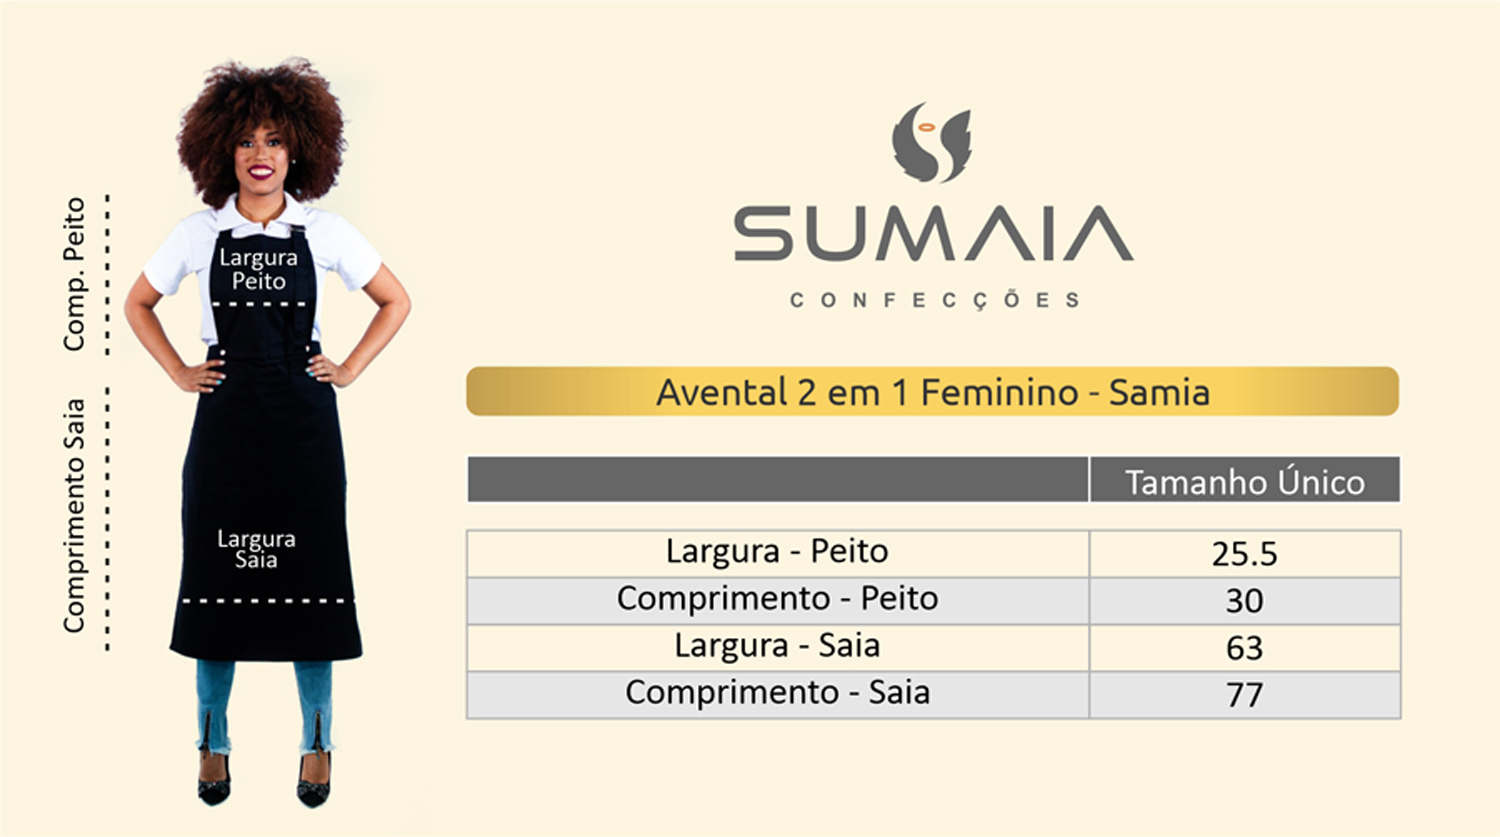 Avental de Frente Feminino Sumaia Samia, 2 em 1 com peito removível Para Profissionais da Cozinha - Azul Índigo